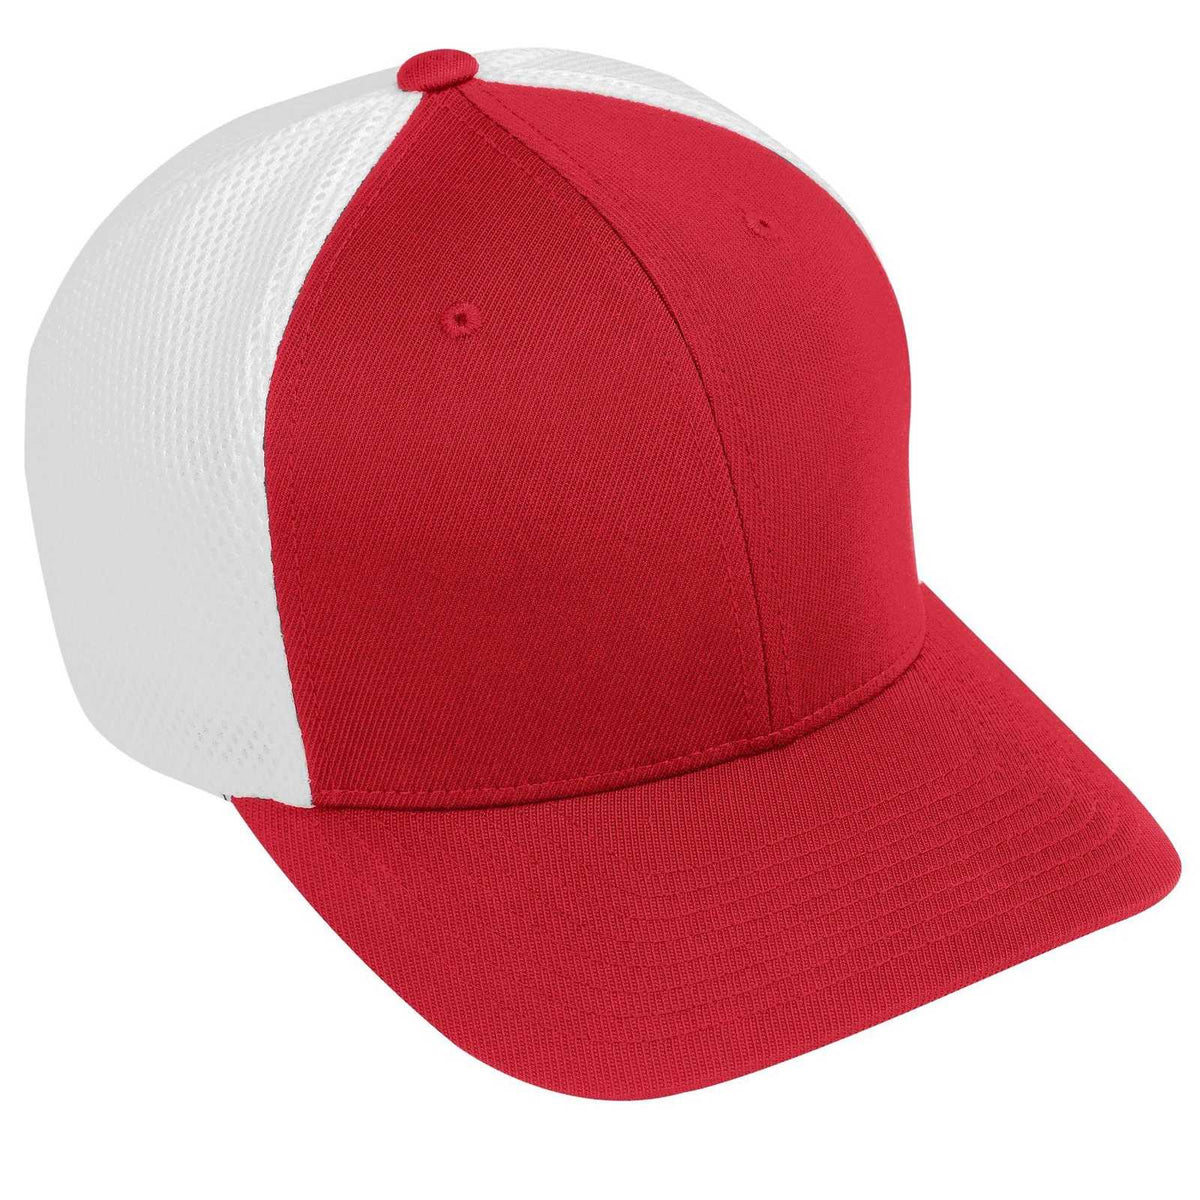 Augusta 6300 Flexfit Vapor Cap - Red White - HIT a Double